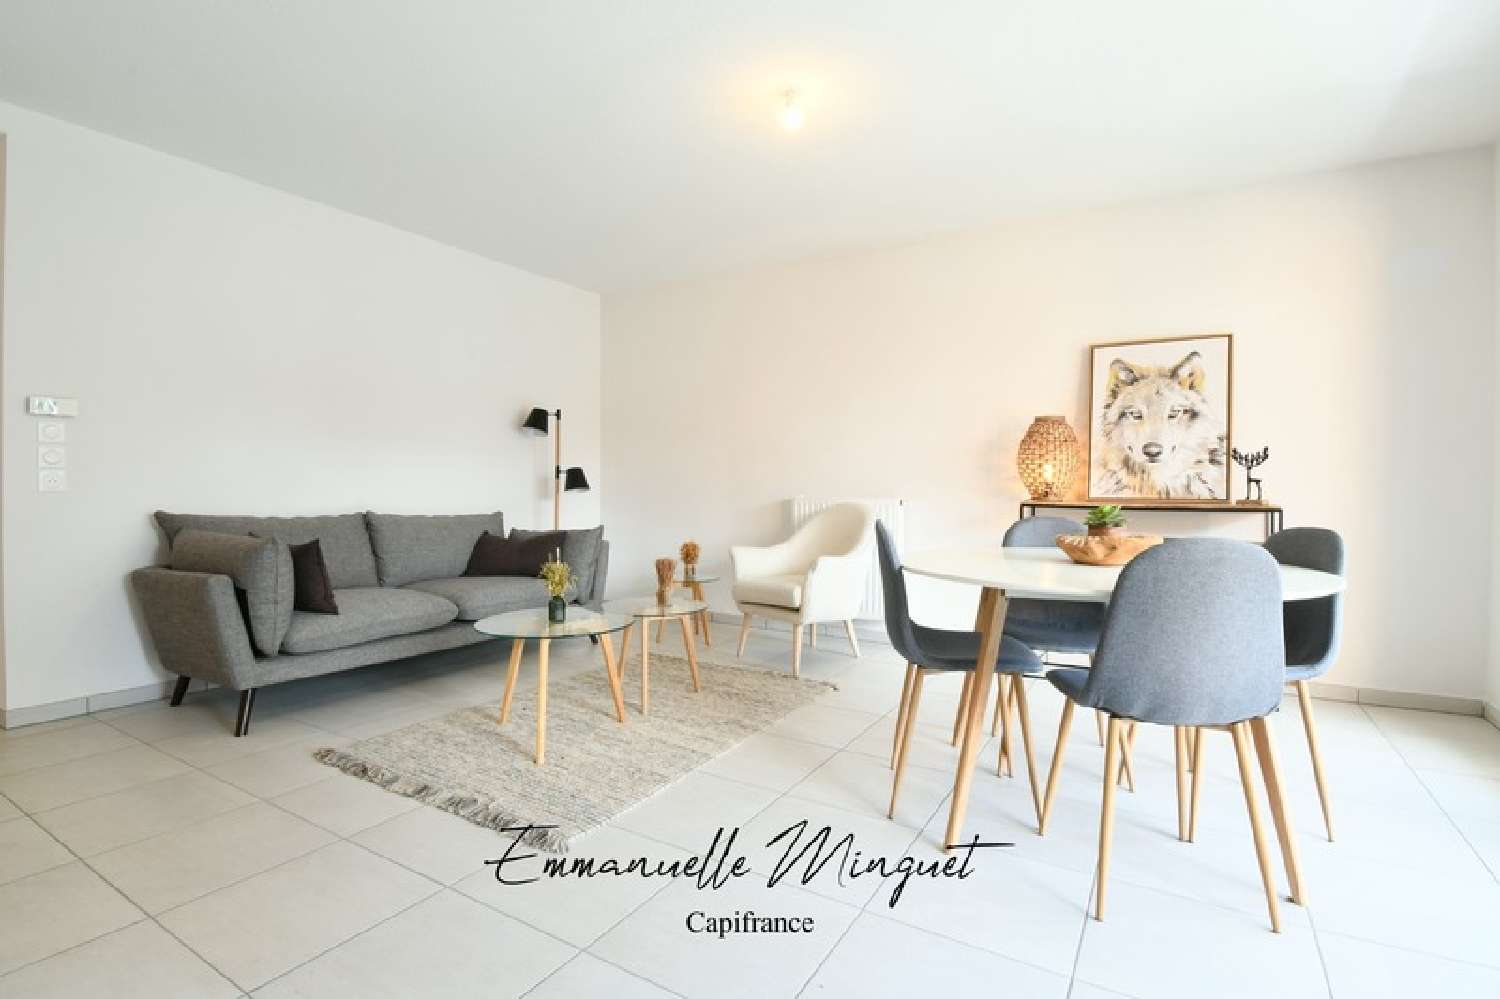  for sale apartment Briançon Hautes-Alpes 3